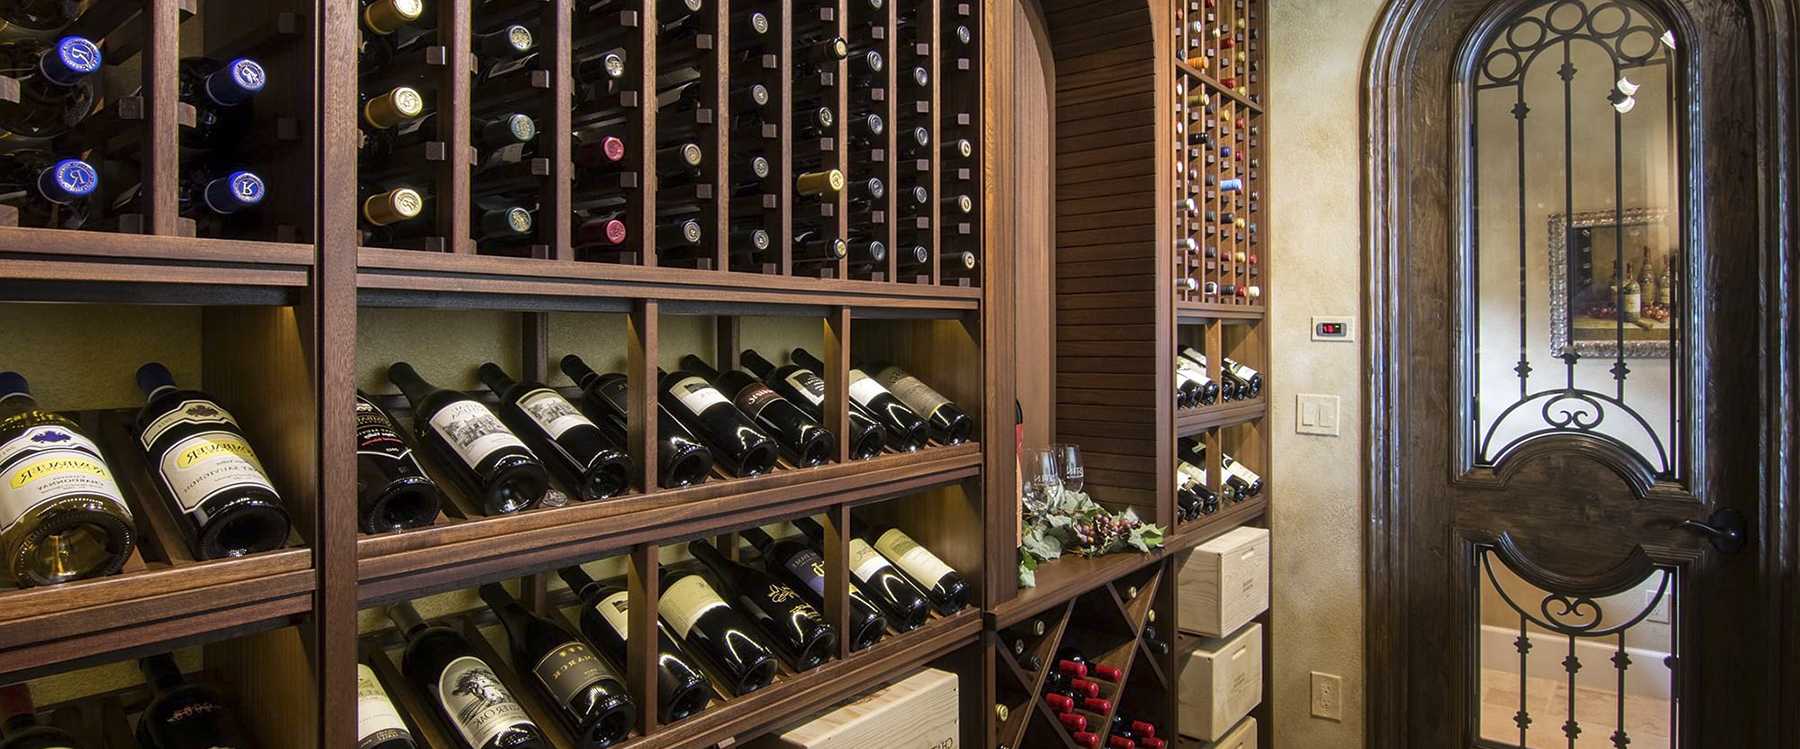 Как хранить вино правильно в бутылках дома и не только